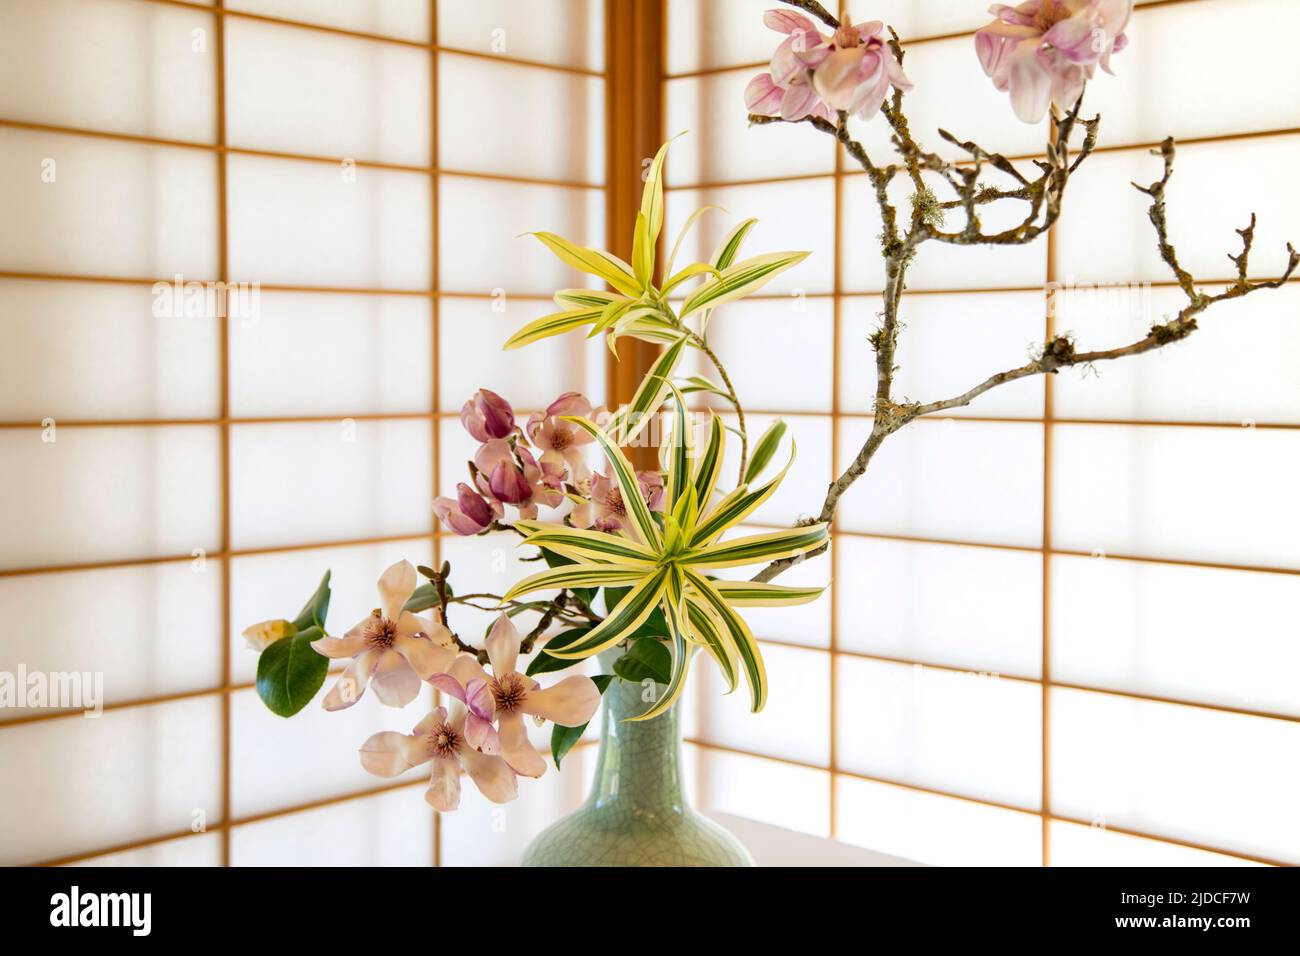 Ikebana floral design Stock Photo